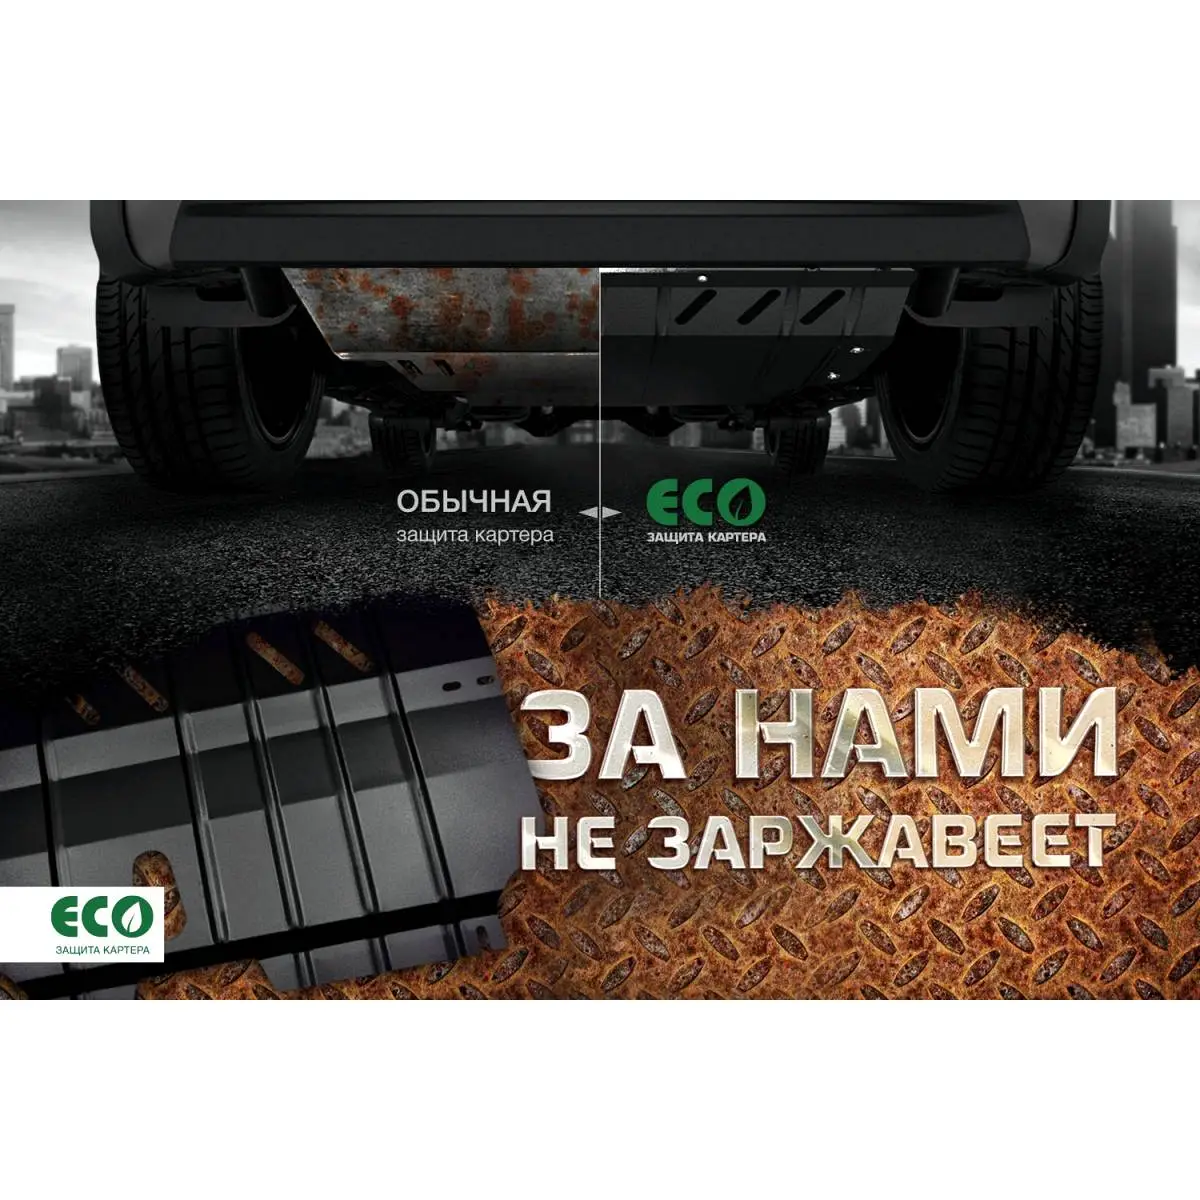 Комплект крепежа защиты картера Eco eco3531022 QAX7EF2 1437099135 AKGJ 53B изображение 5